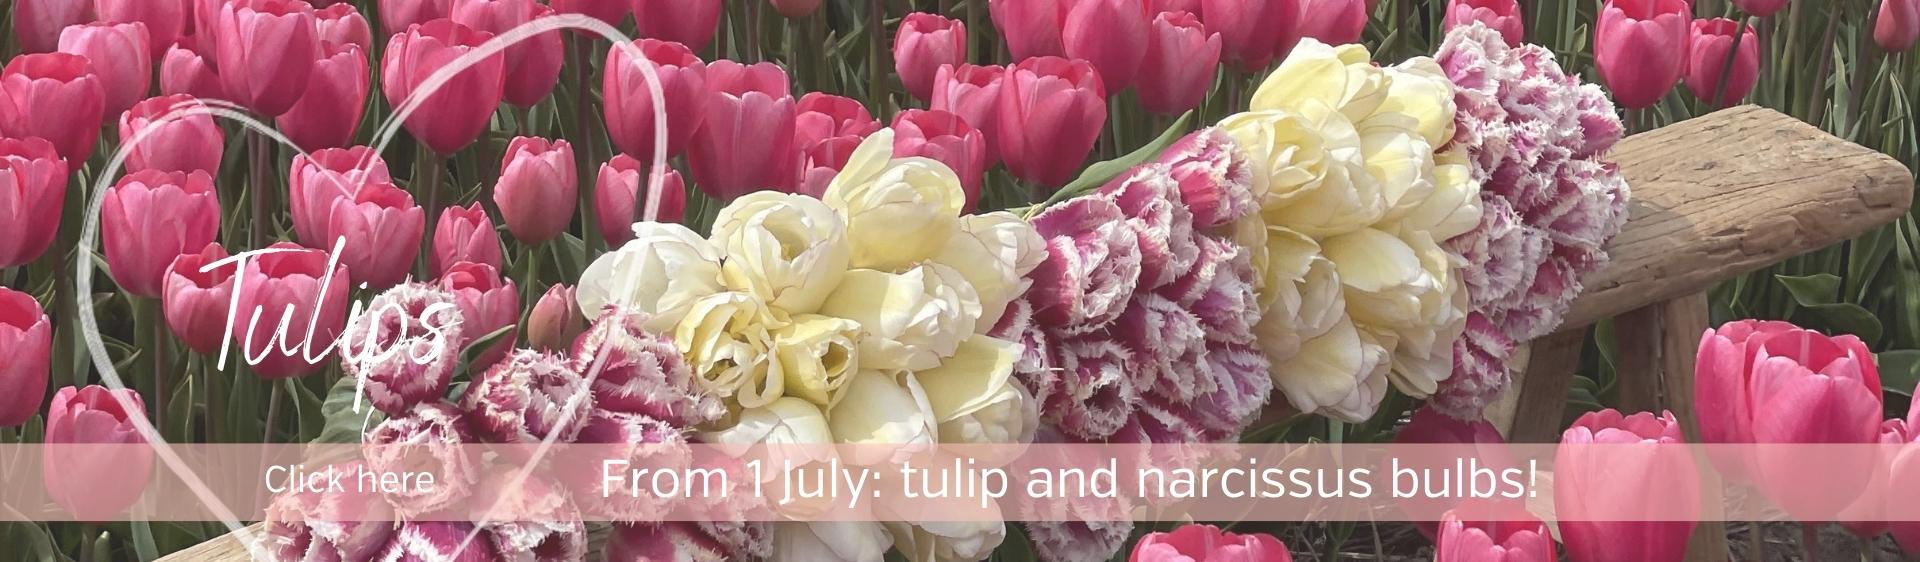 Tulips bulbs from our farm